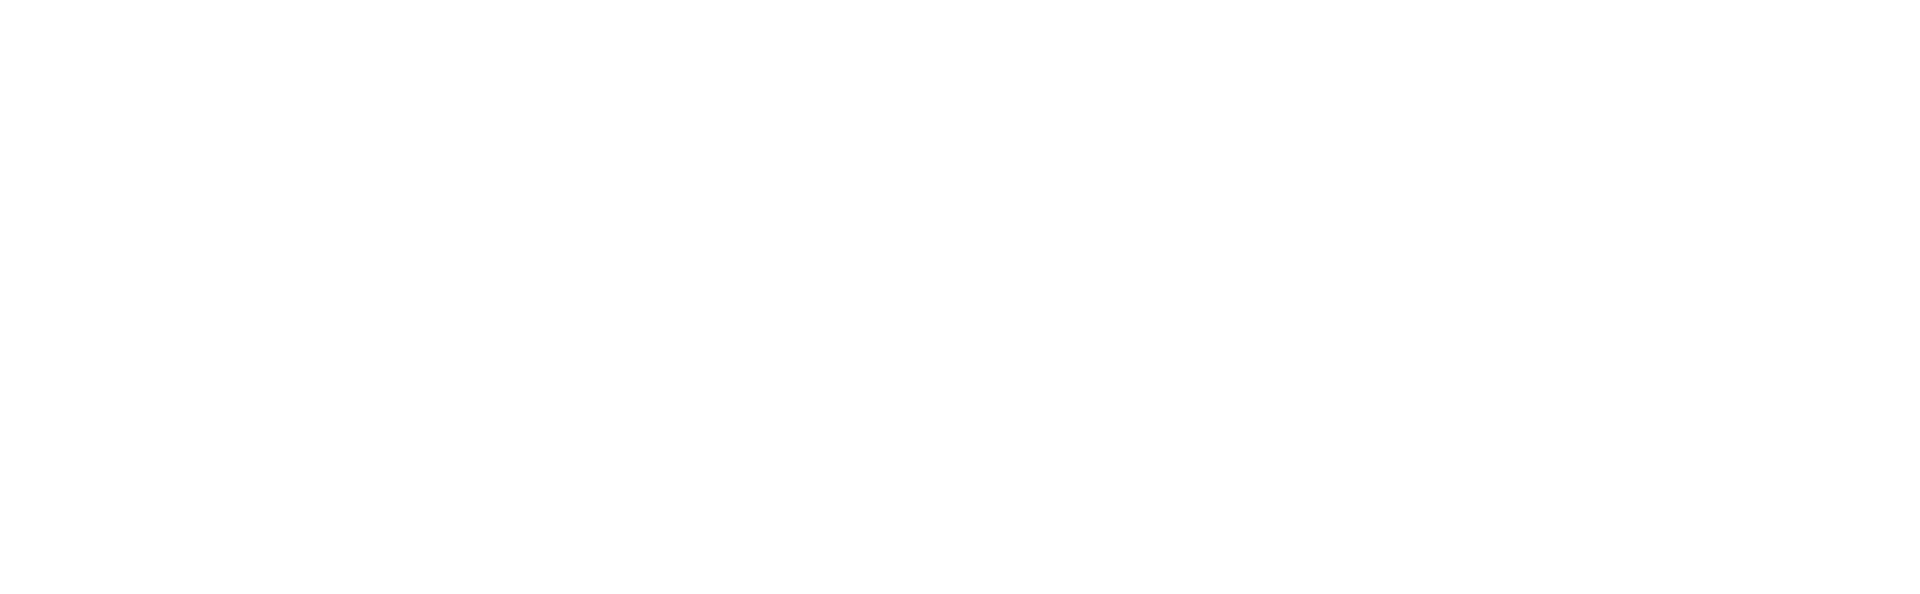 JW steelworks oy